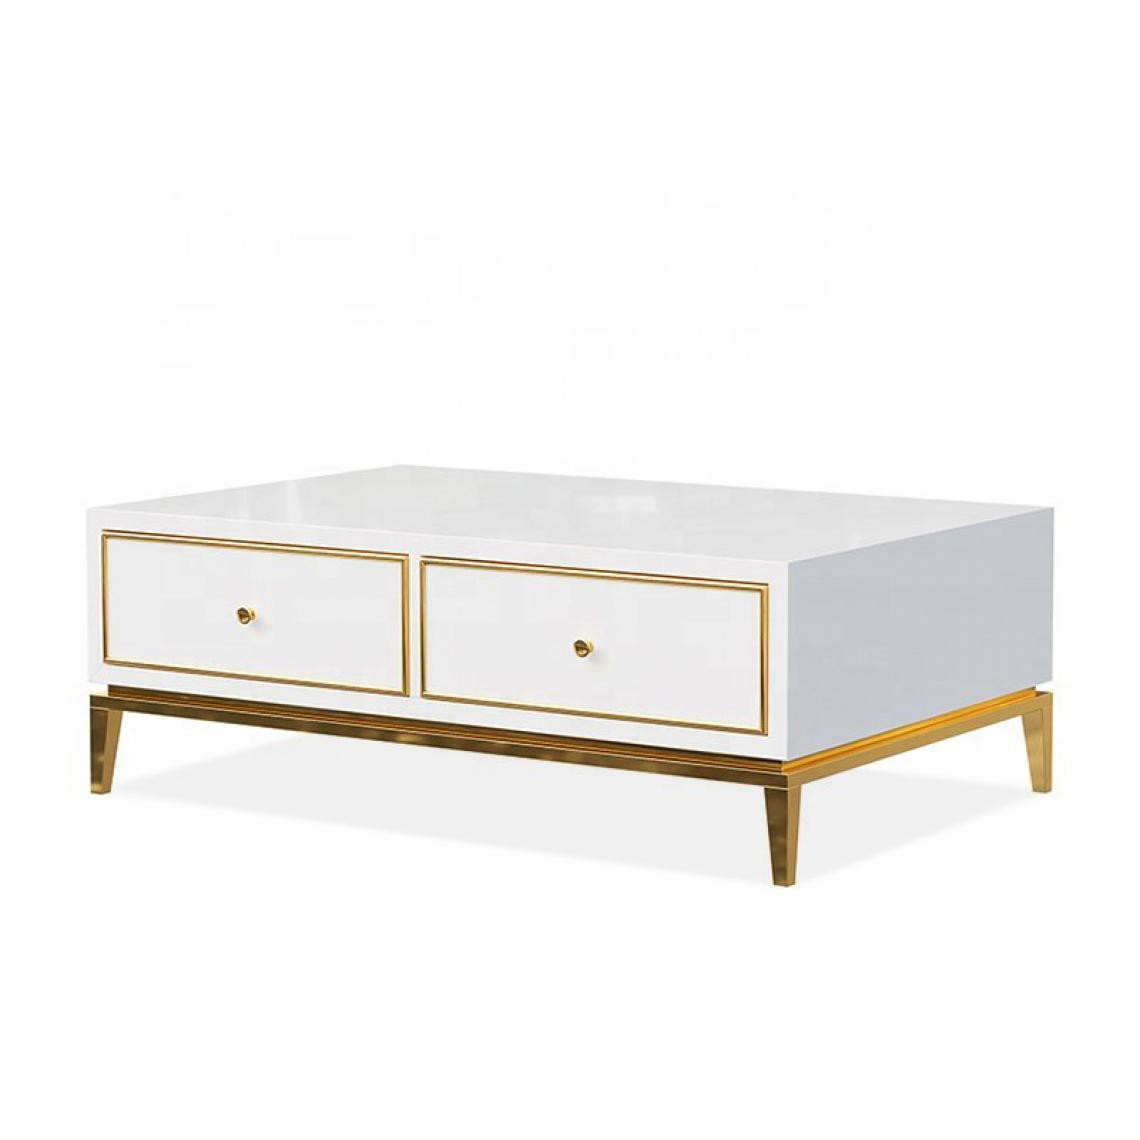 Meubler Design - Table basse design blanc laqué et pieds couleur or Glosy - Tables basses